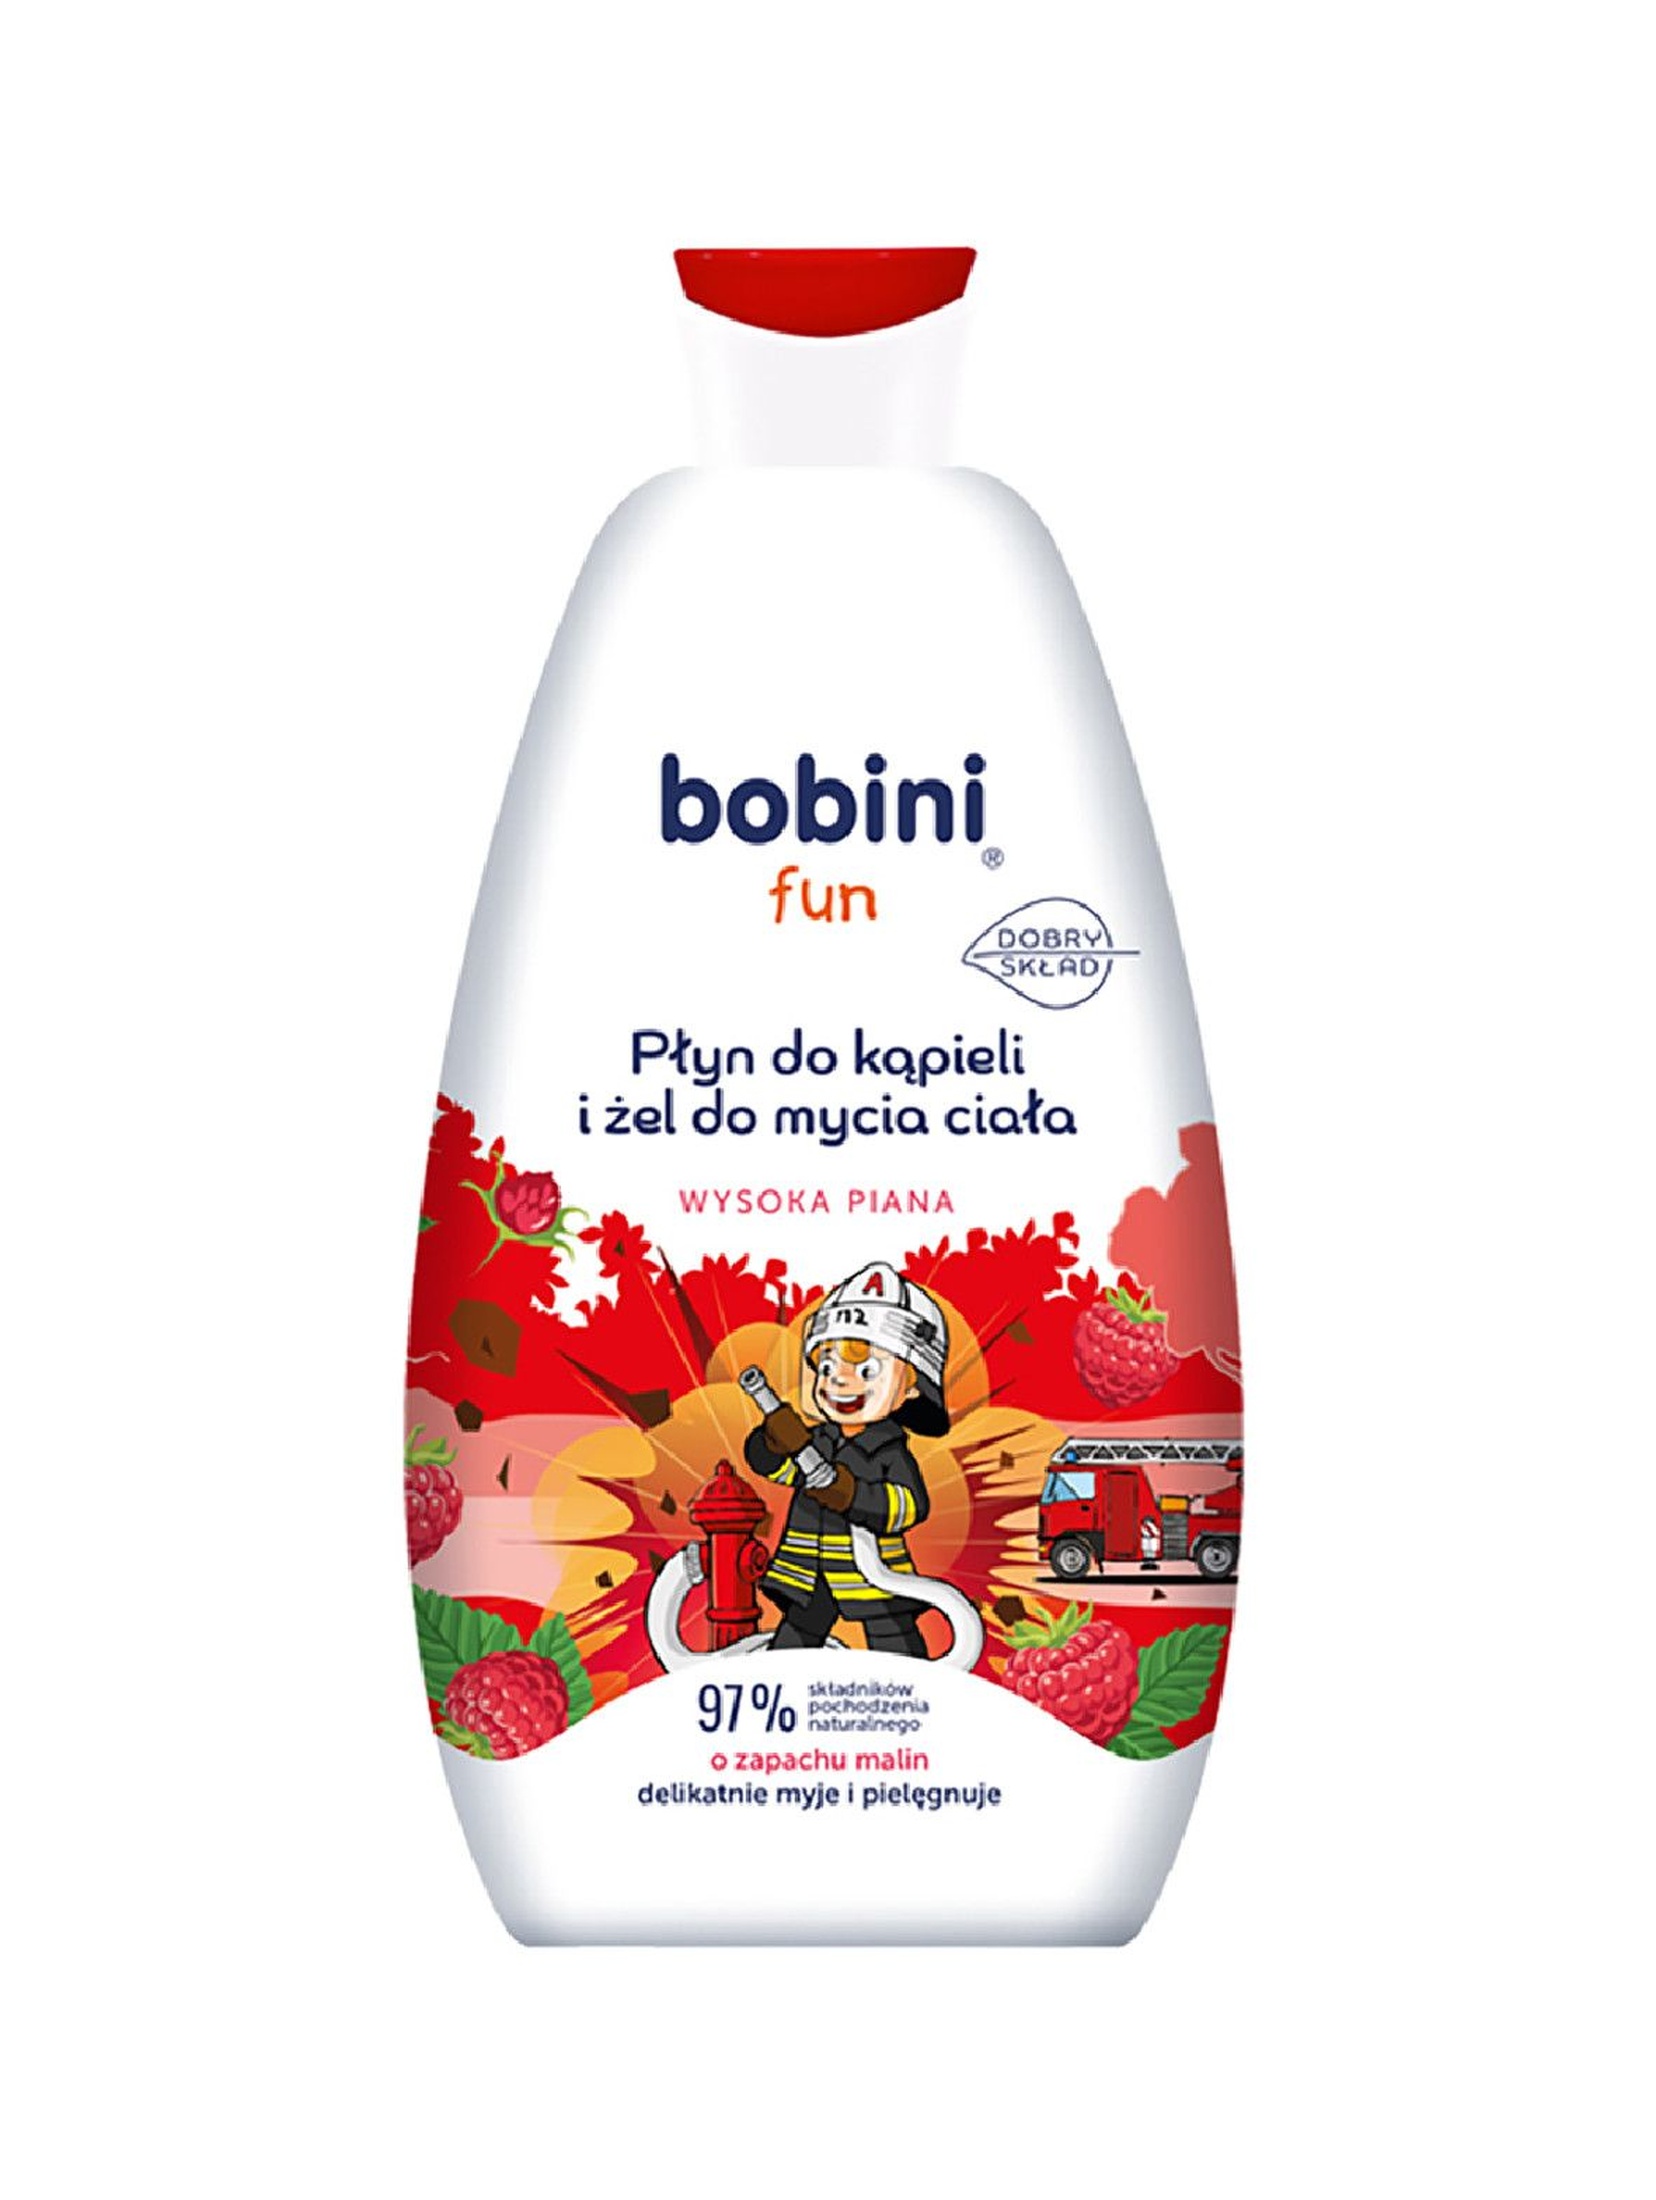 BOBINI Fun Płyn do kąpieli i żel do mycia - o zapachu malin - Wysoka piana 500 ml